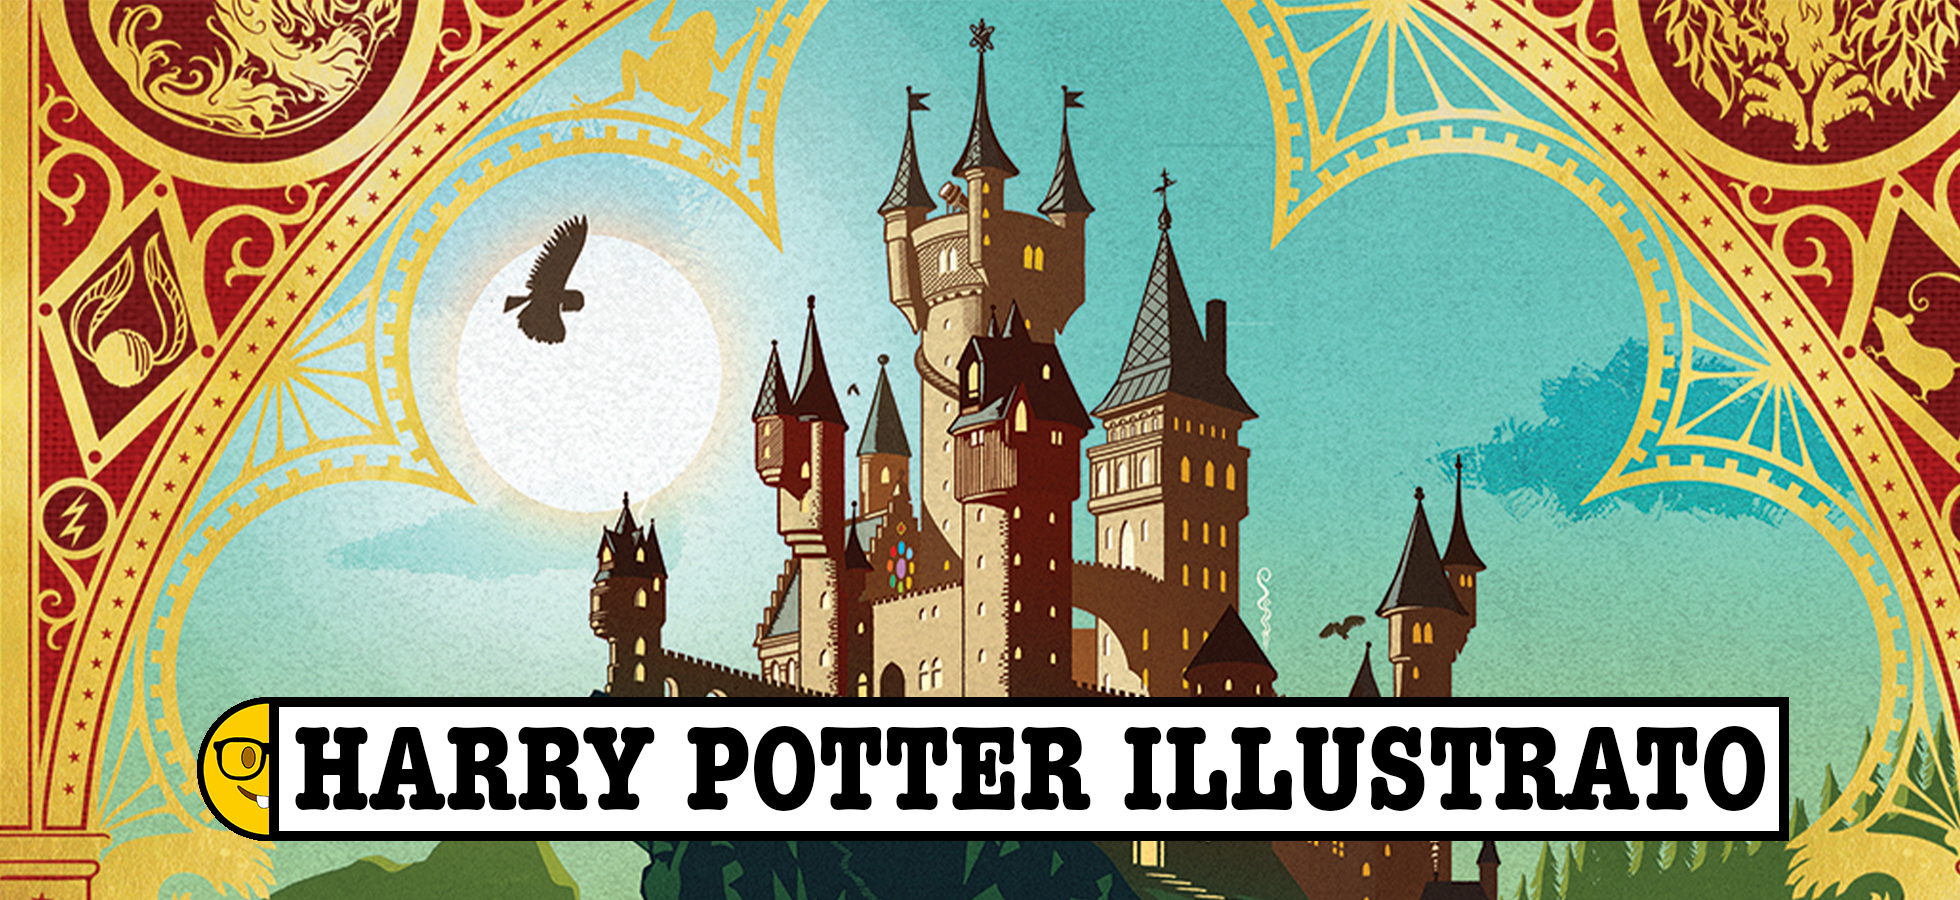 Harry Potter: in arrivo una nuova edizione illustrata da MinaLima 